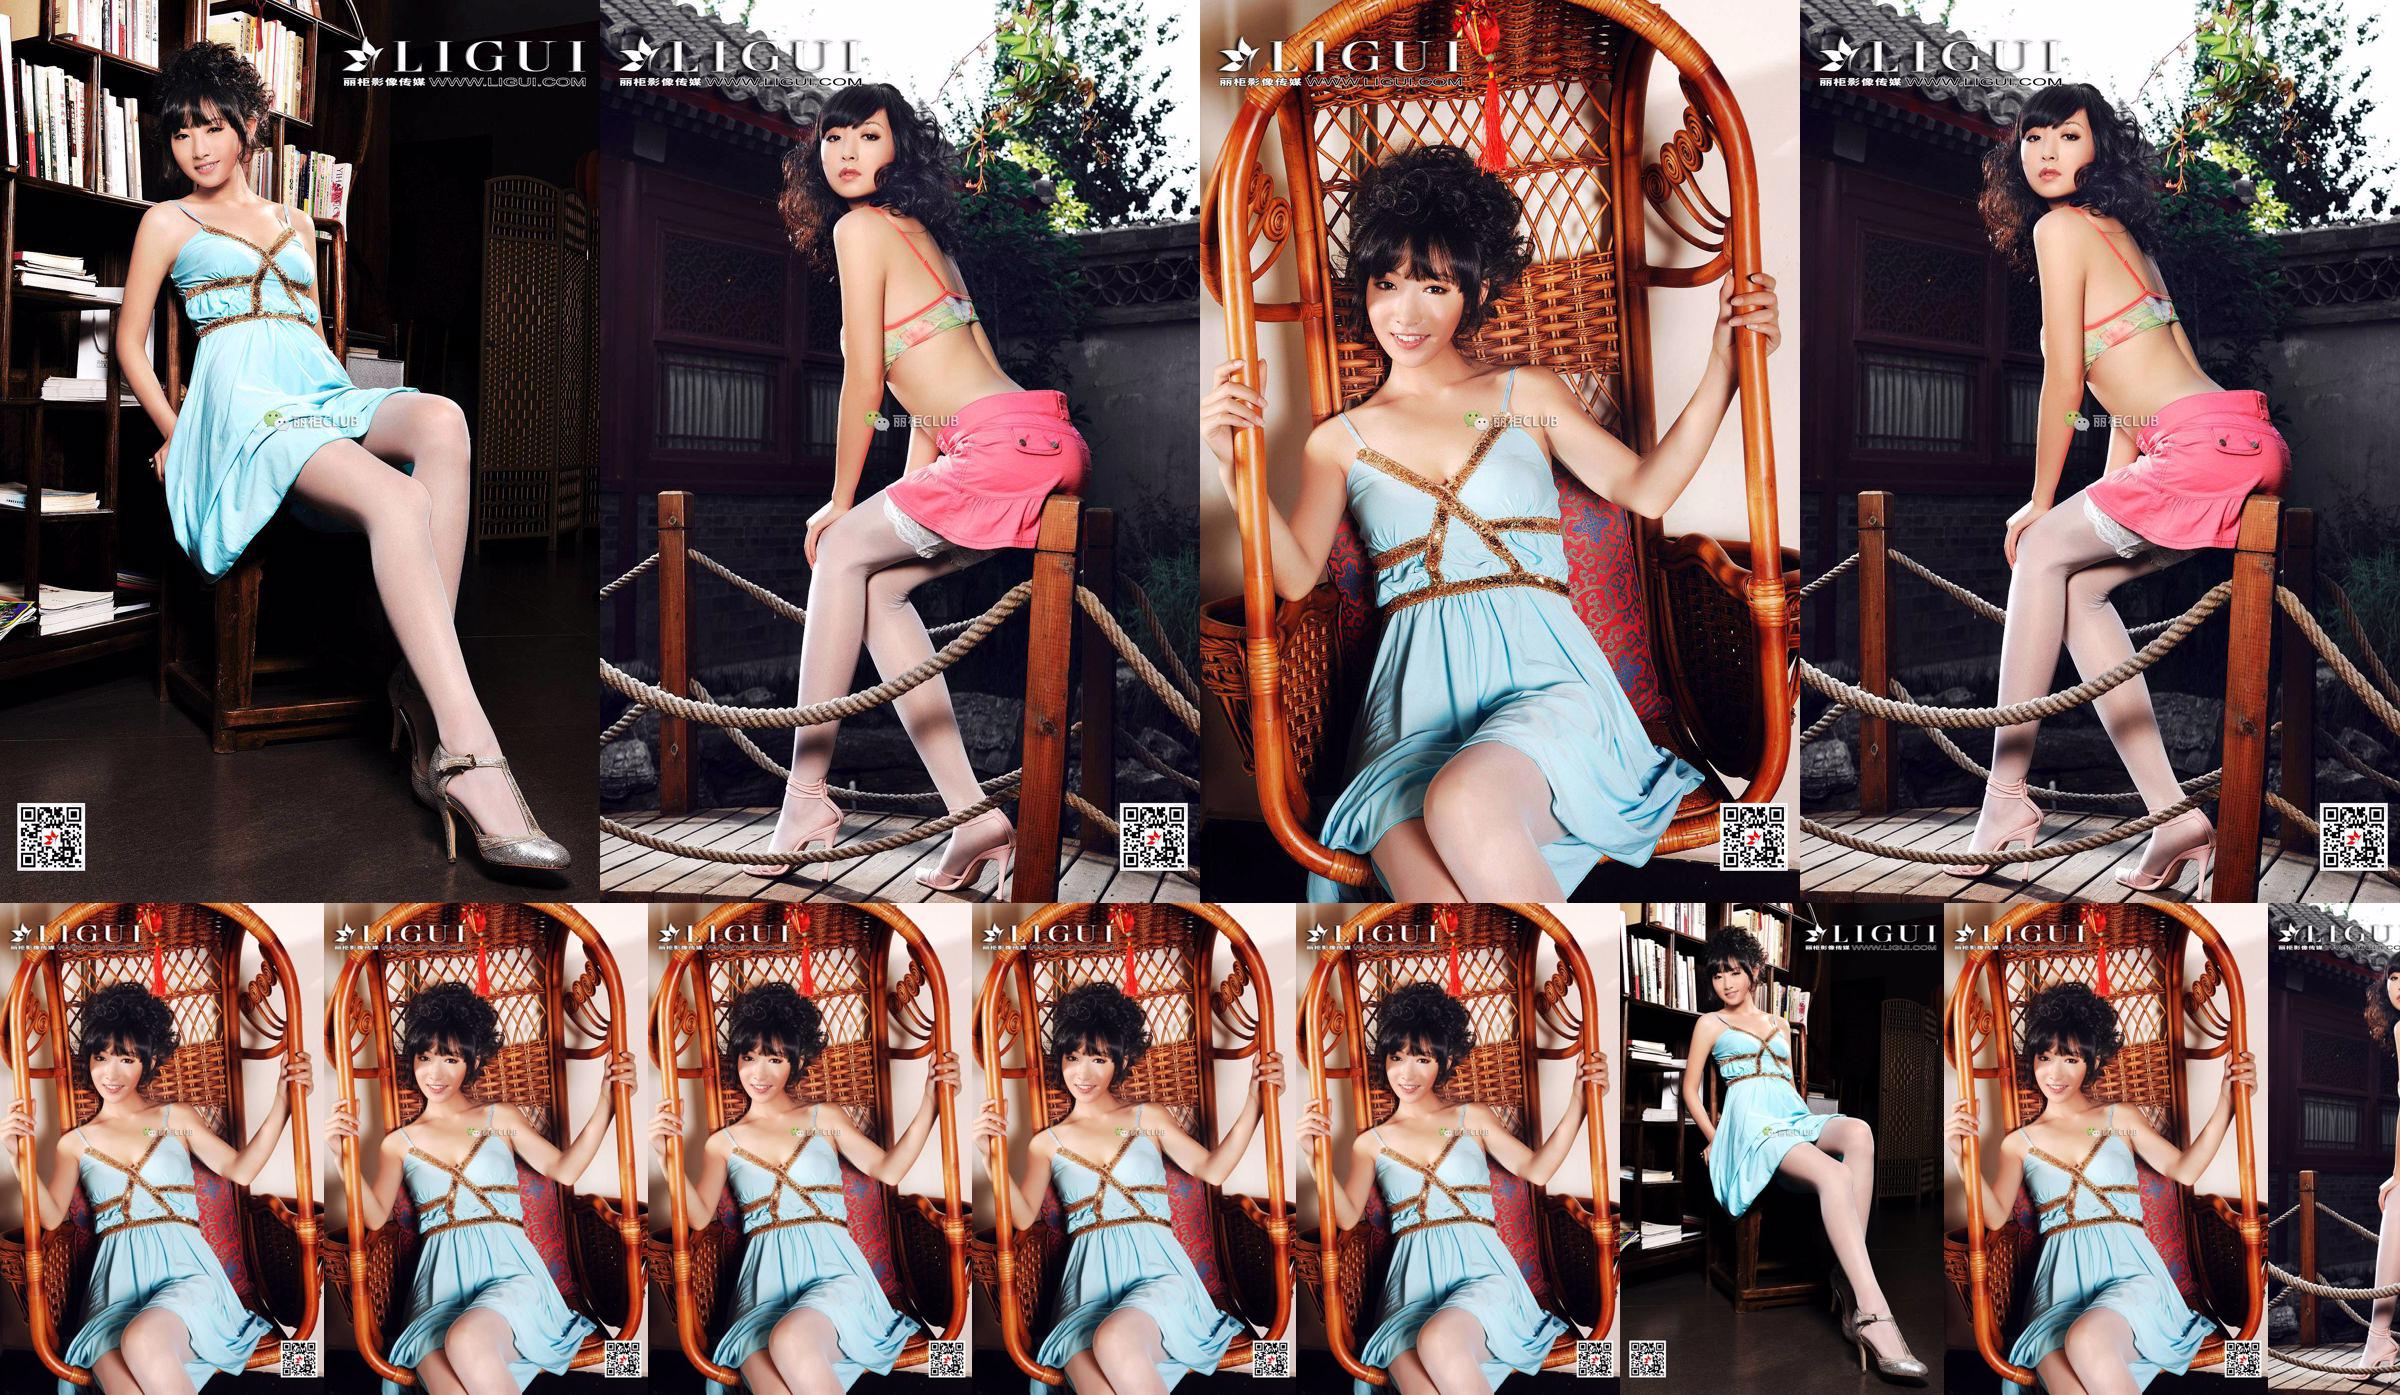 นางแบบขา Liu Yao "Classical Beauty Silk" [丽柜 LIGUI] Beautiful Legs in Stockings No.3927c3 หน้า 4